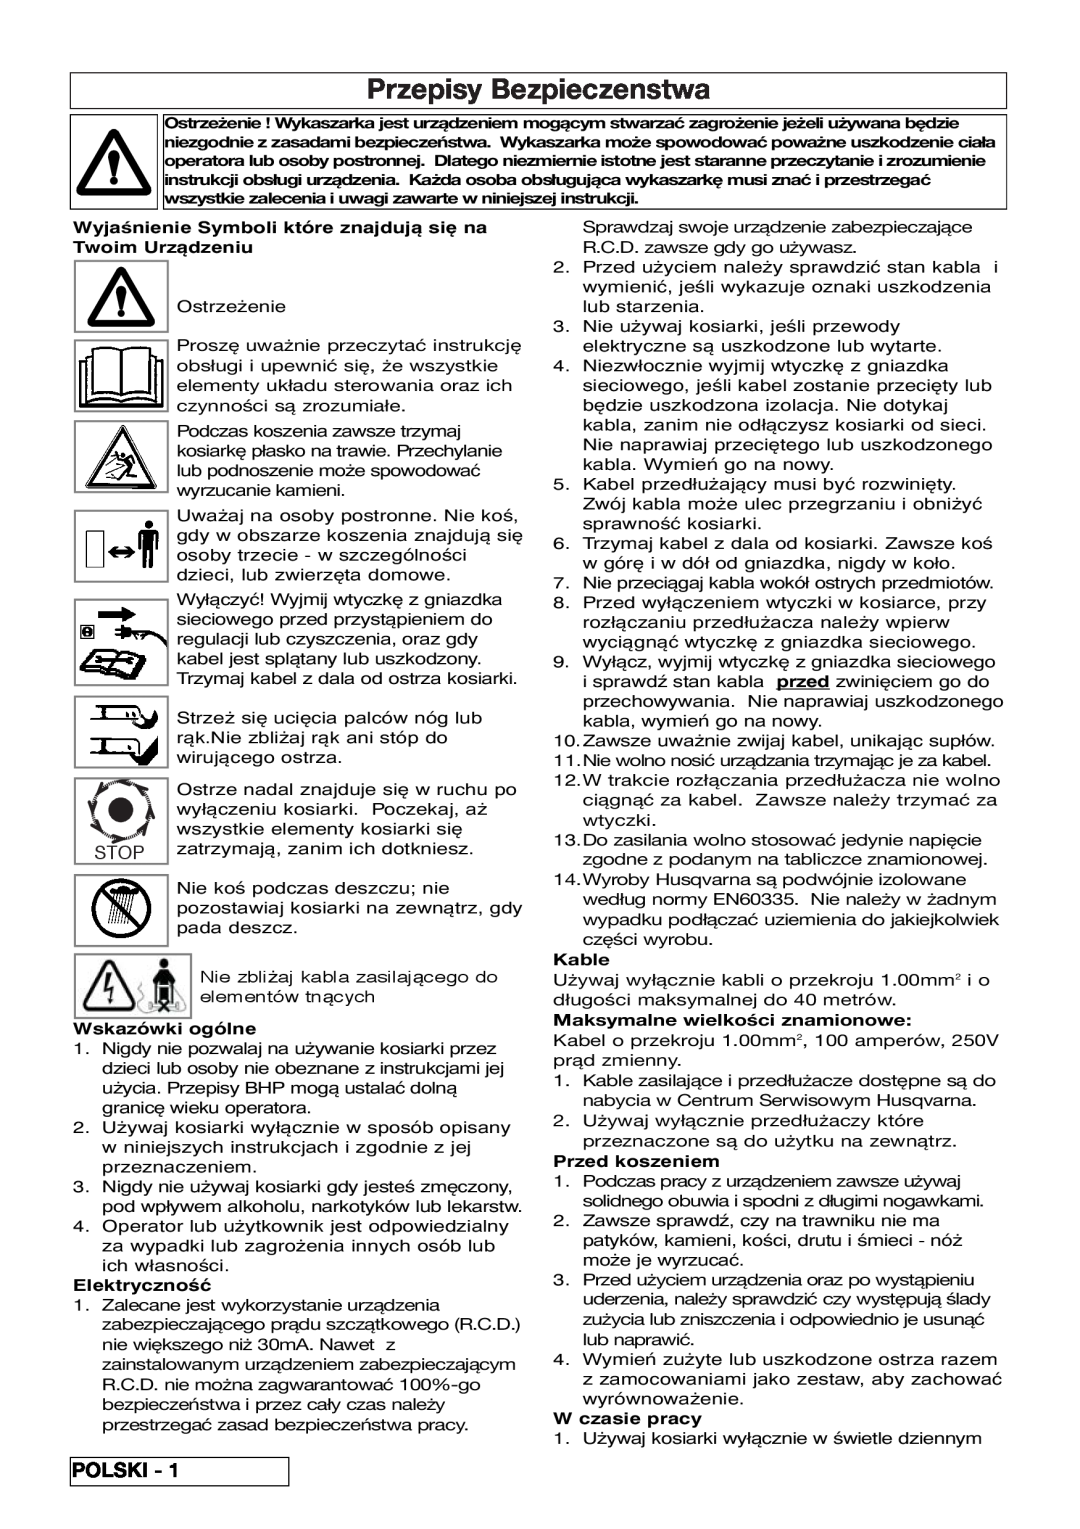 Flymo VM032 manual Przepisy Bezpieczenstwa, Polski, Wskazówki ogólne, Elektryczność, Kable, Maksymalne wielkości znamionowe 